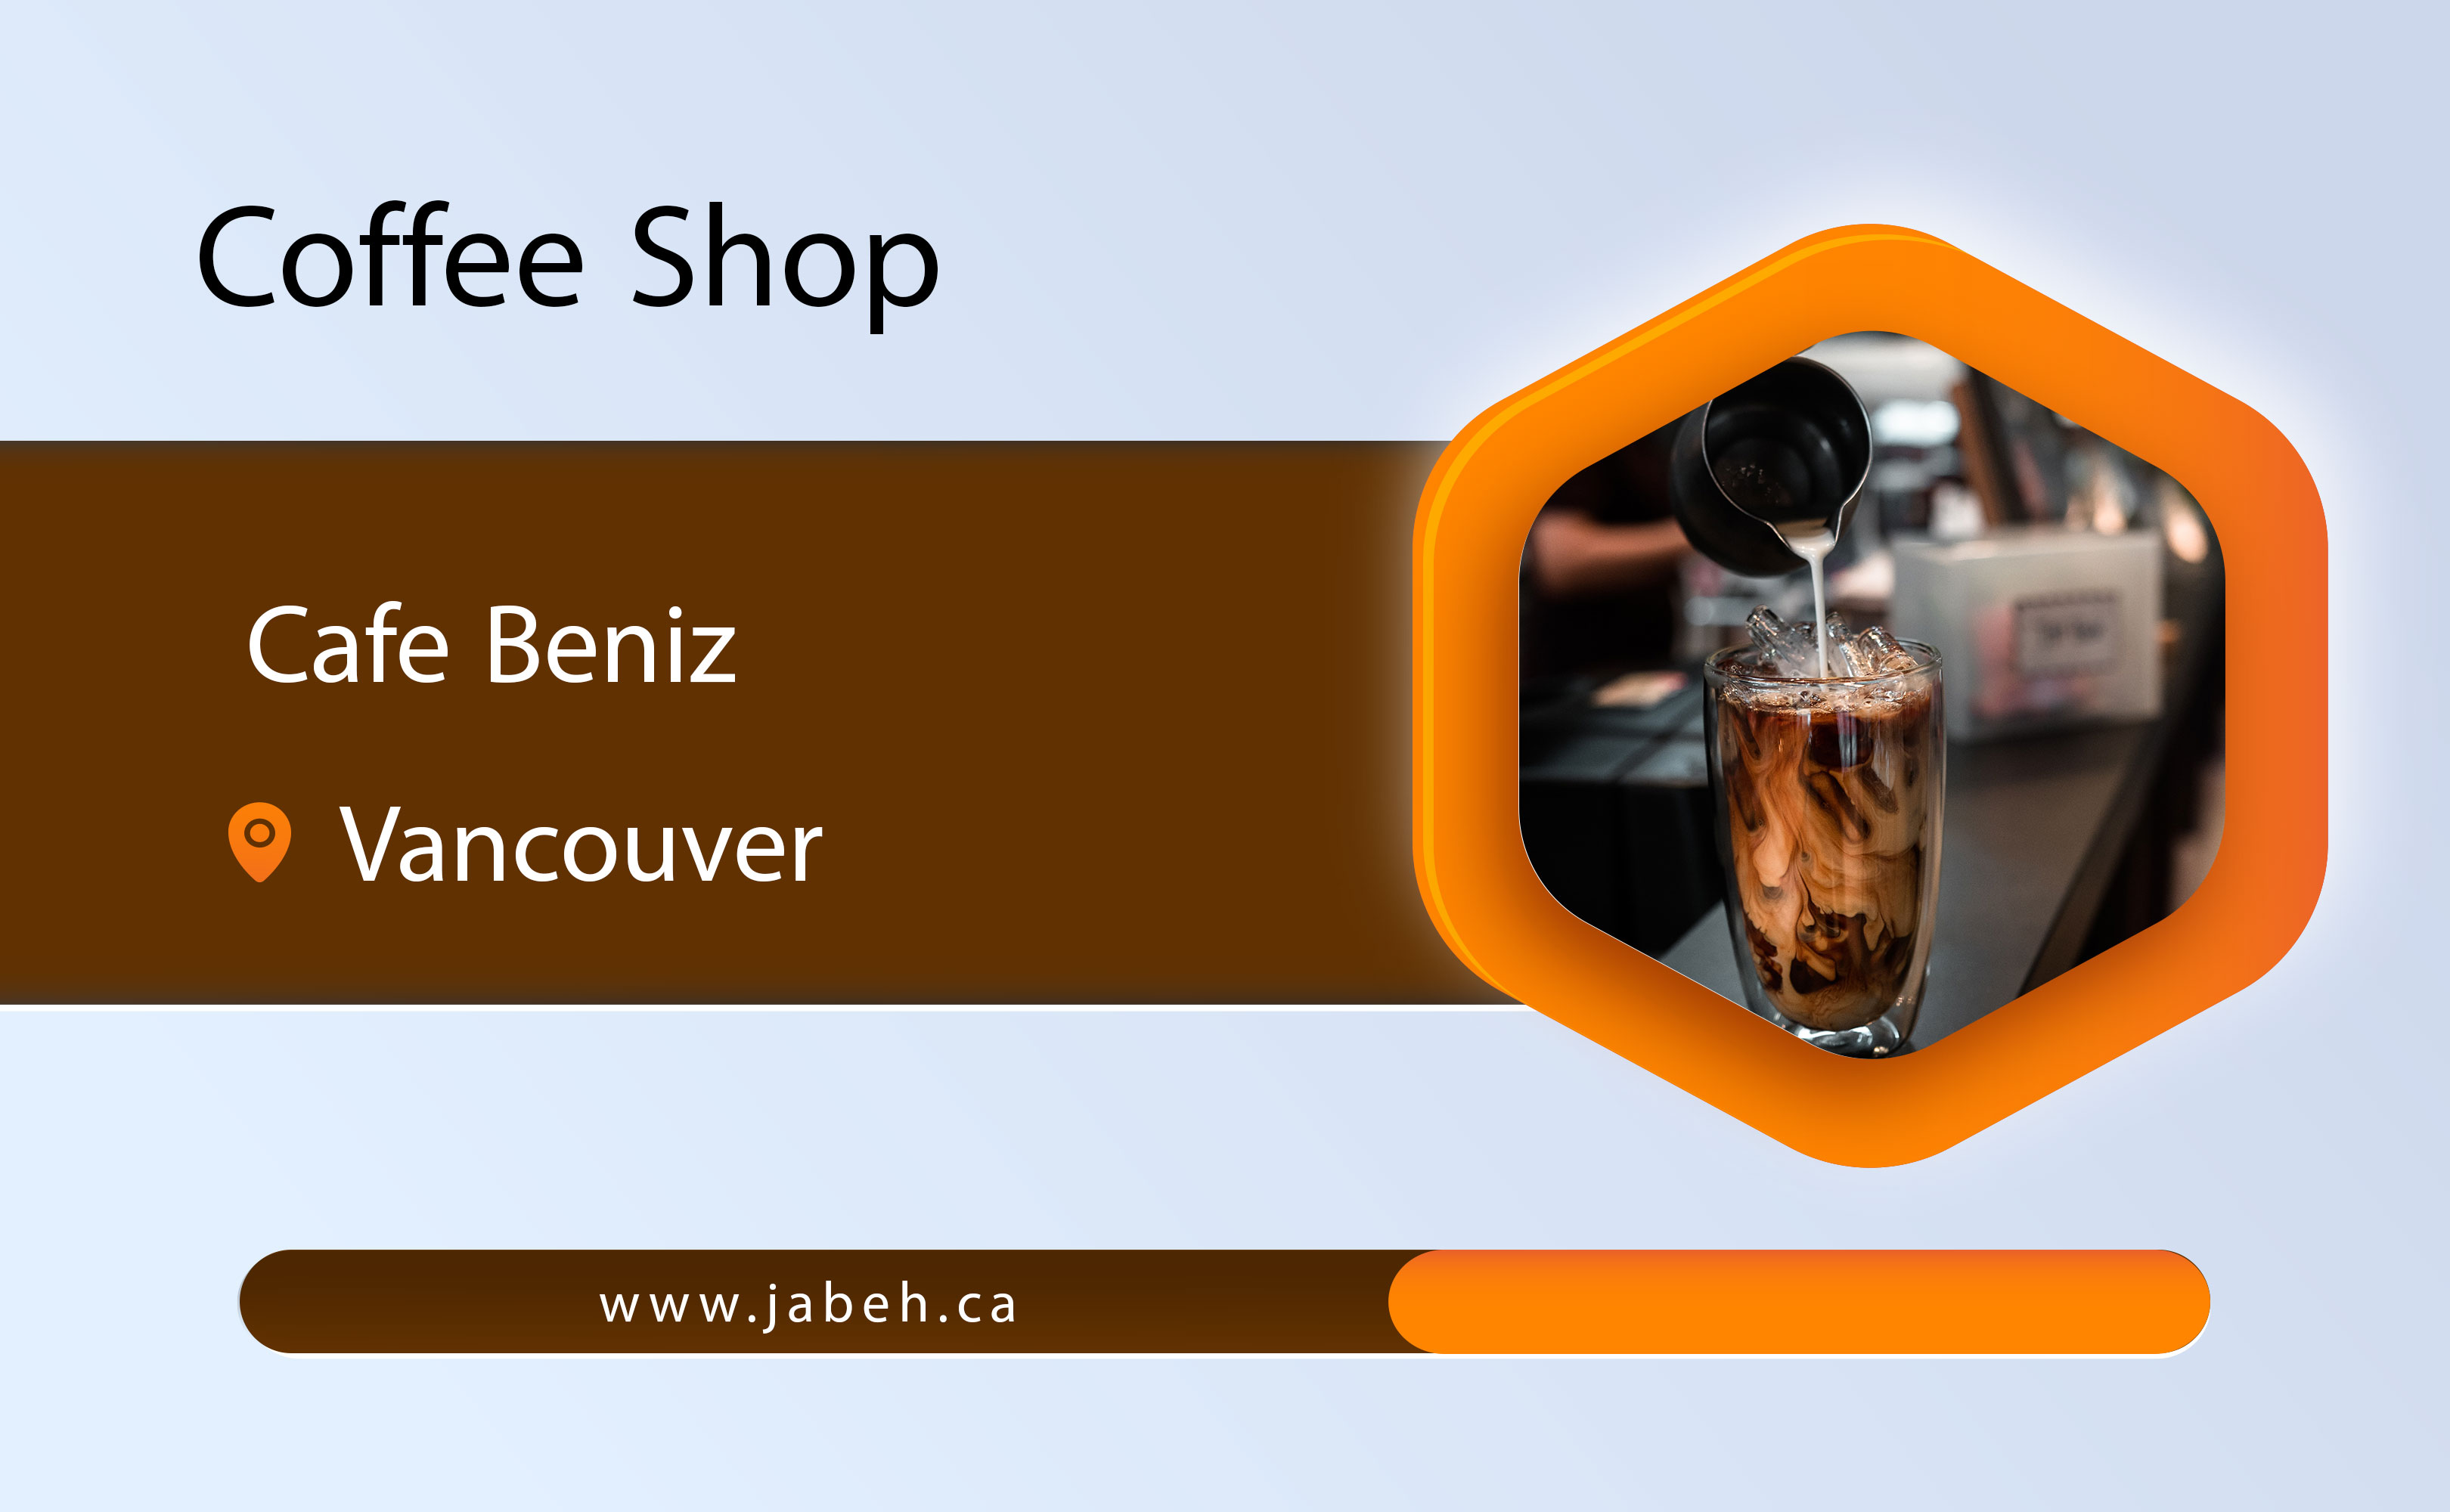 Cafe Beniz in Vancouver